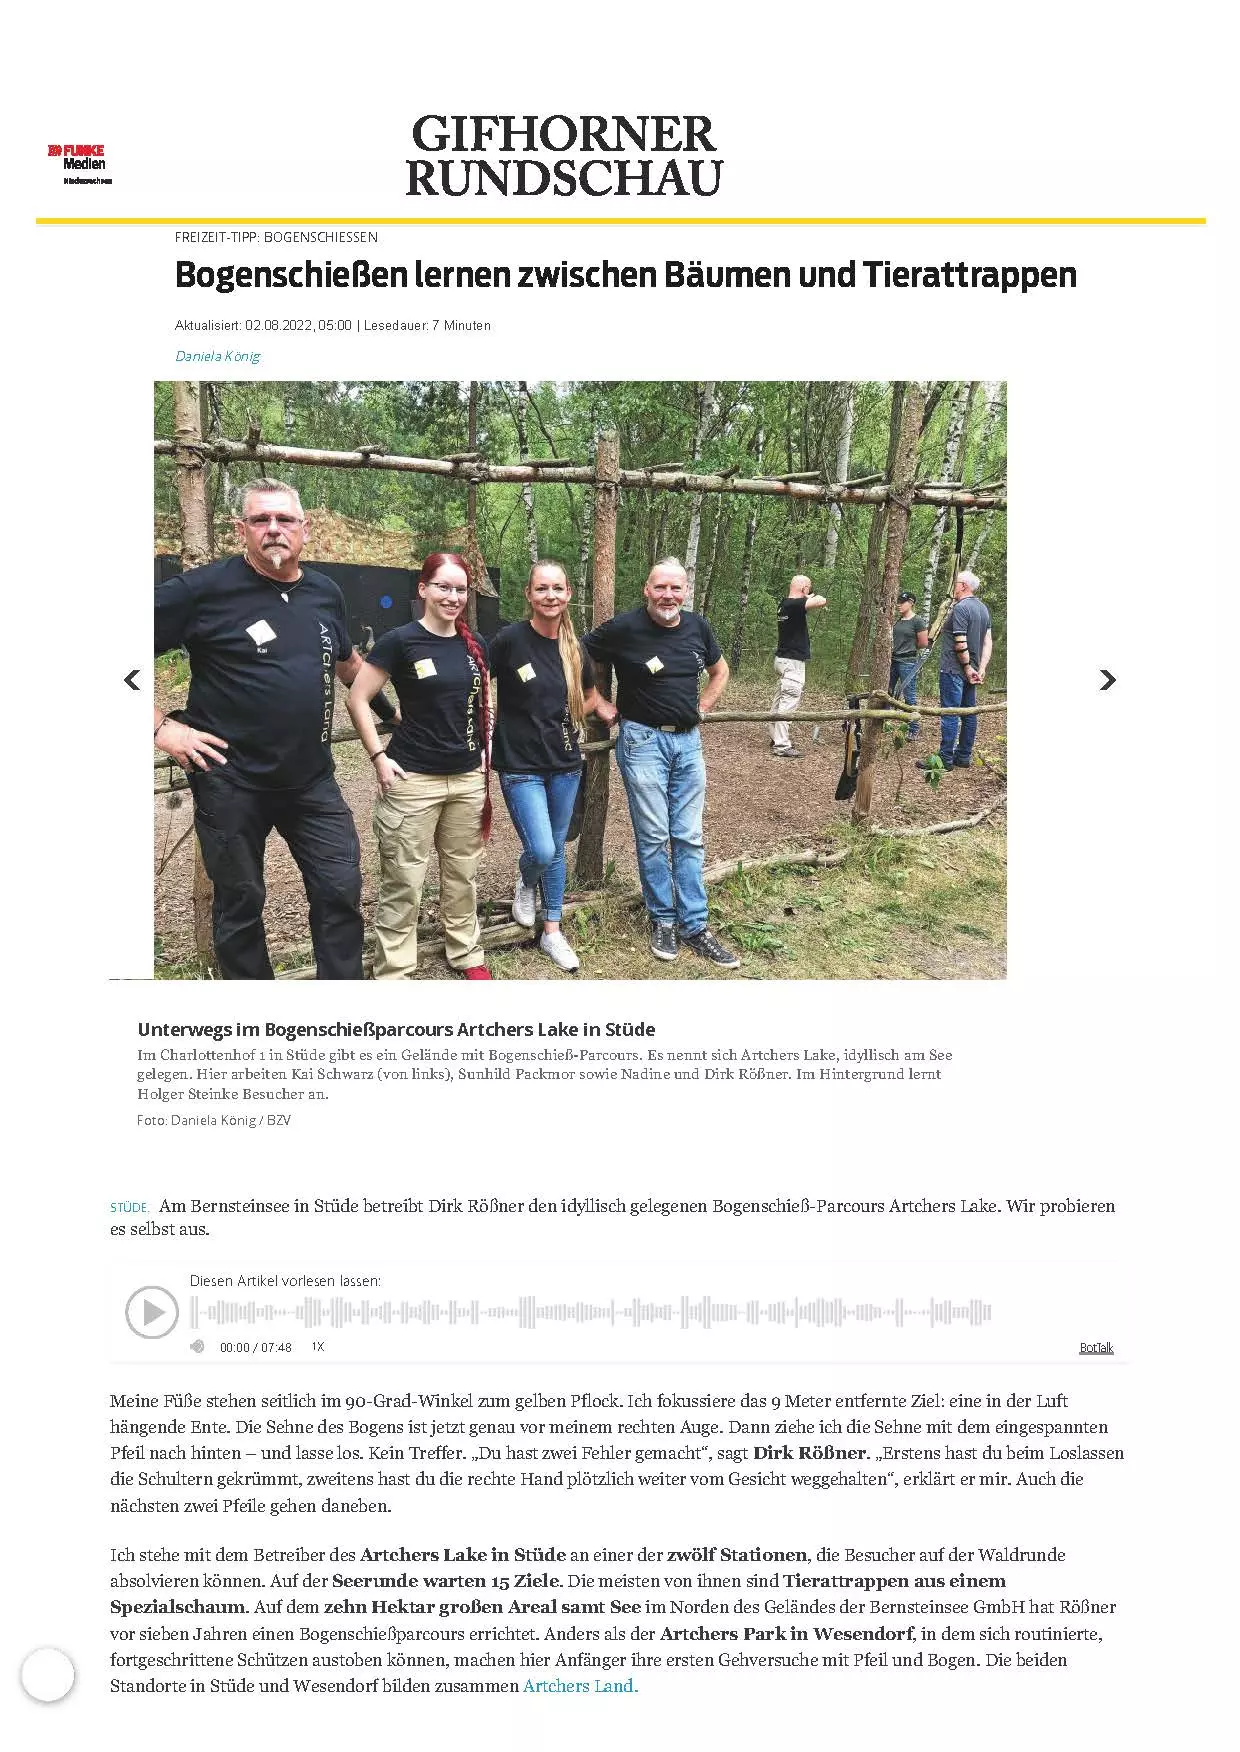 Bogenschießen lernen zwischen Bäumen und Tierattrappen Gifhorner Rundschau95752 Seite 1